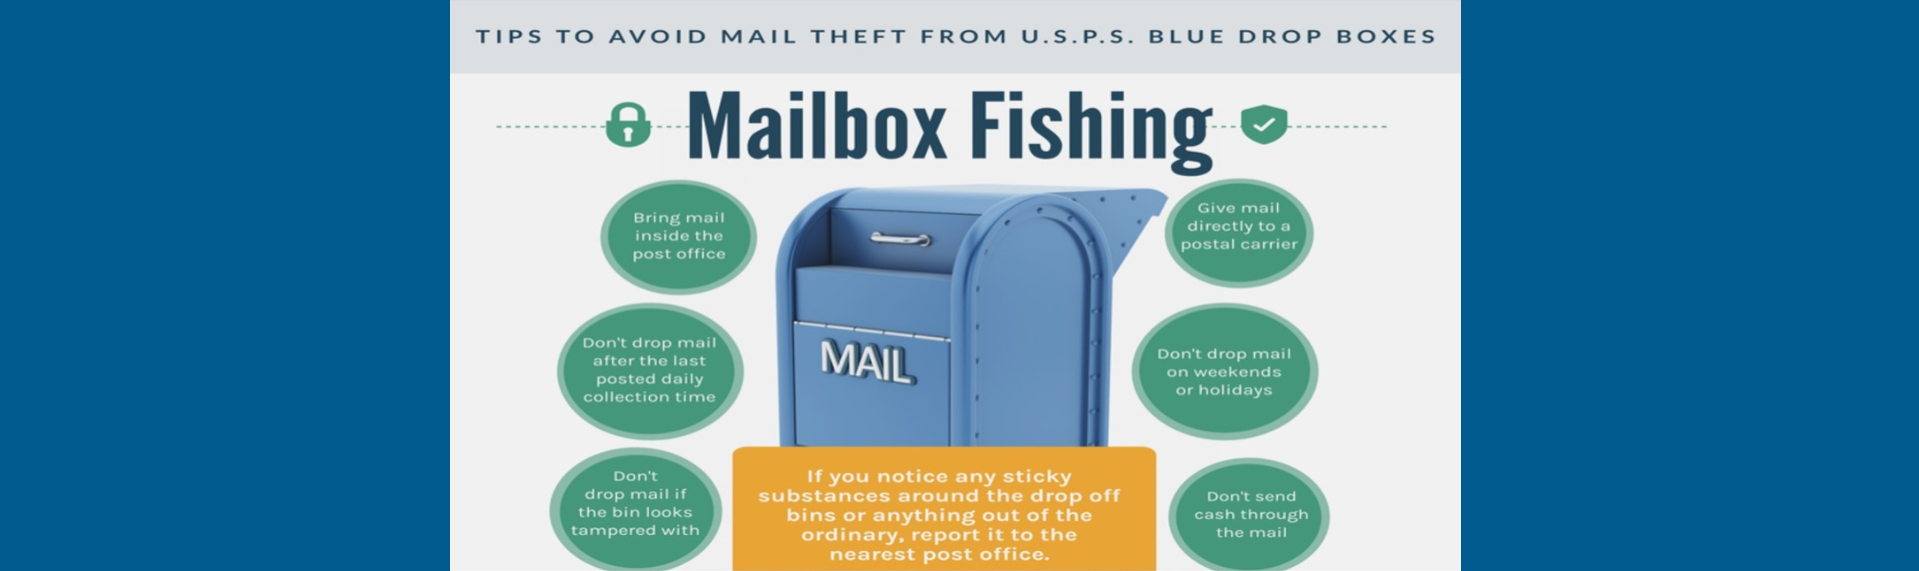 Mailbox Fishing